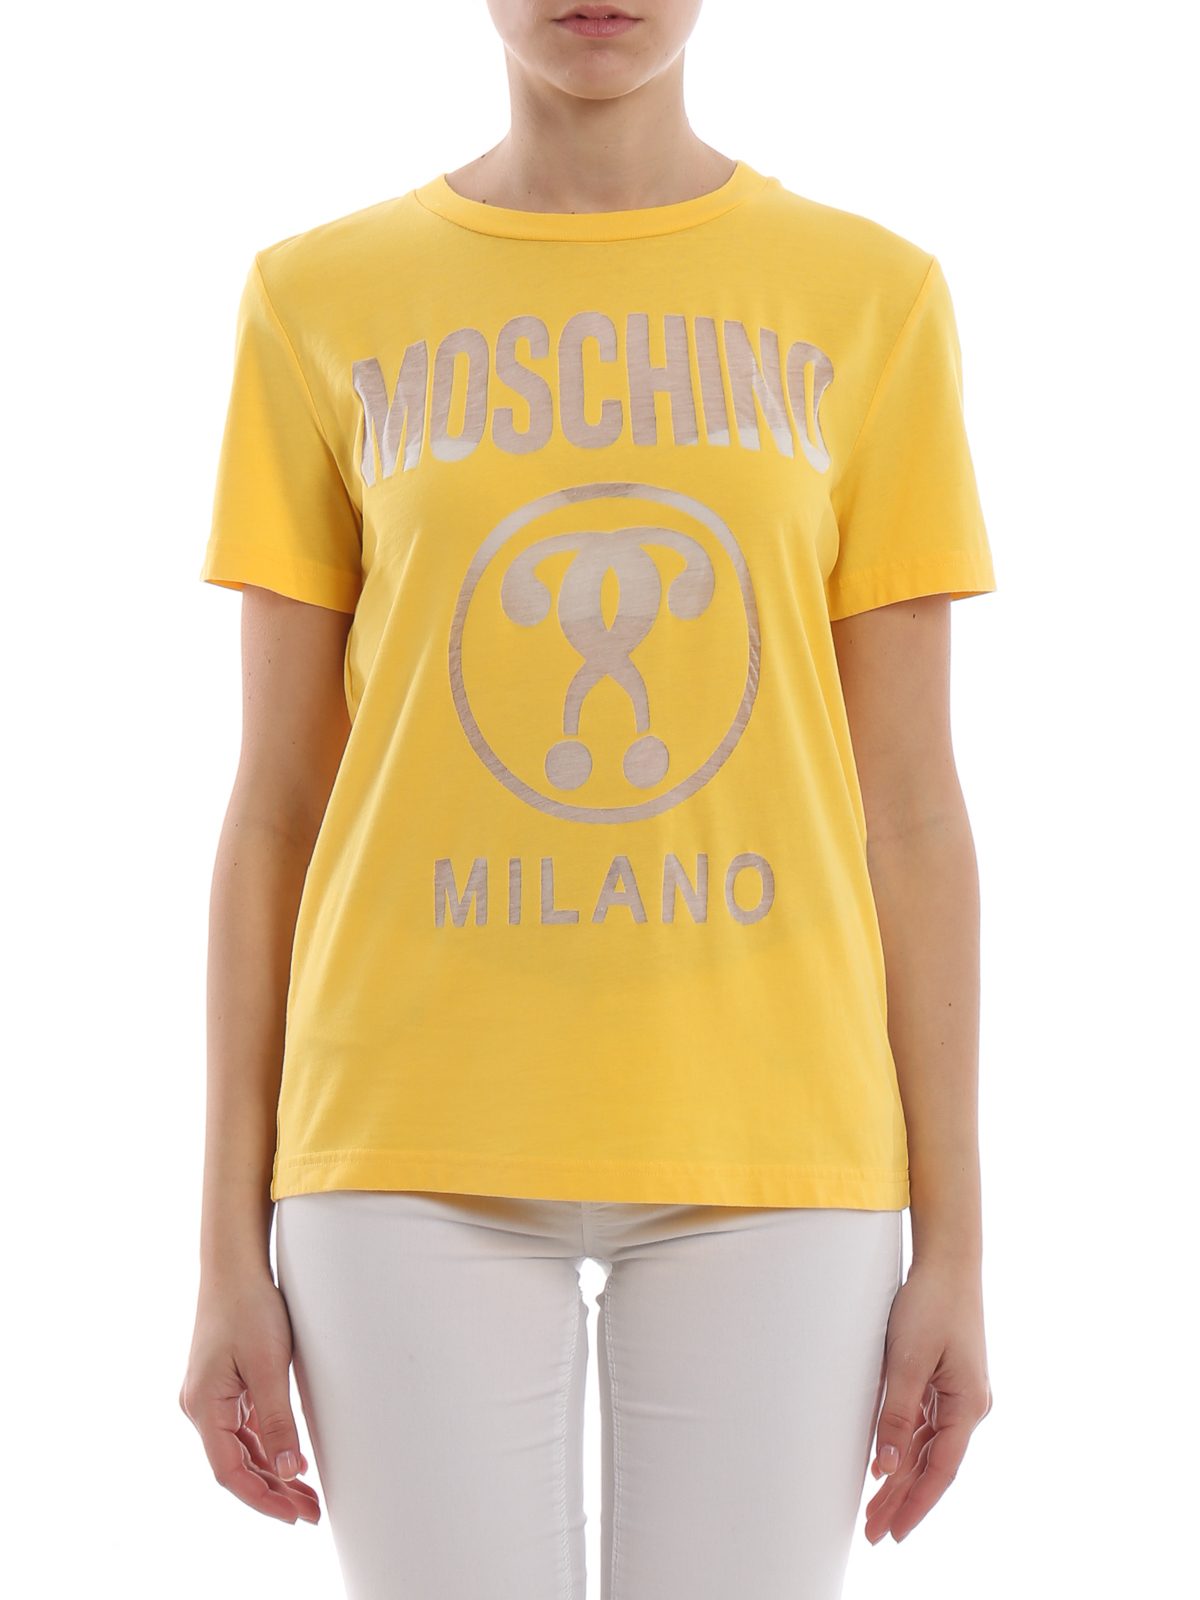 moschino yellow t shirt